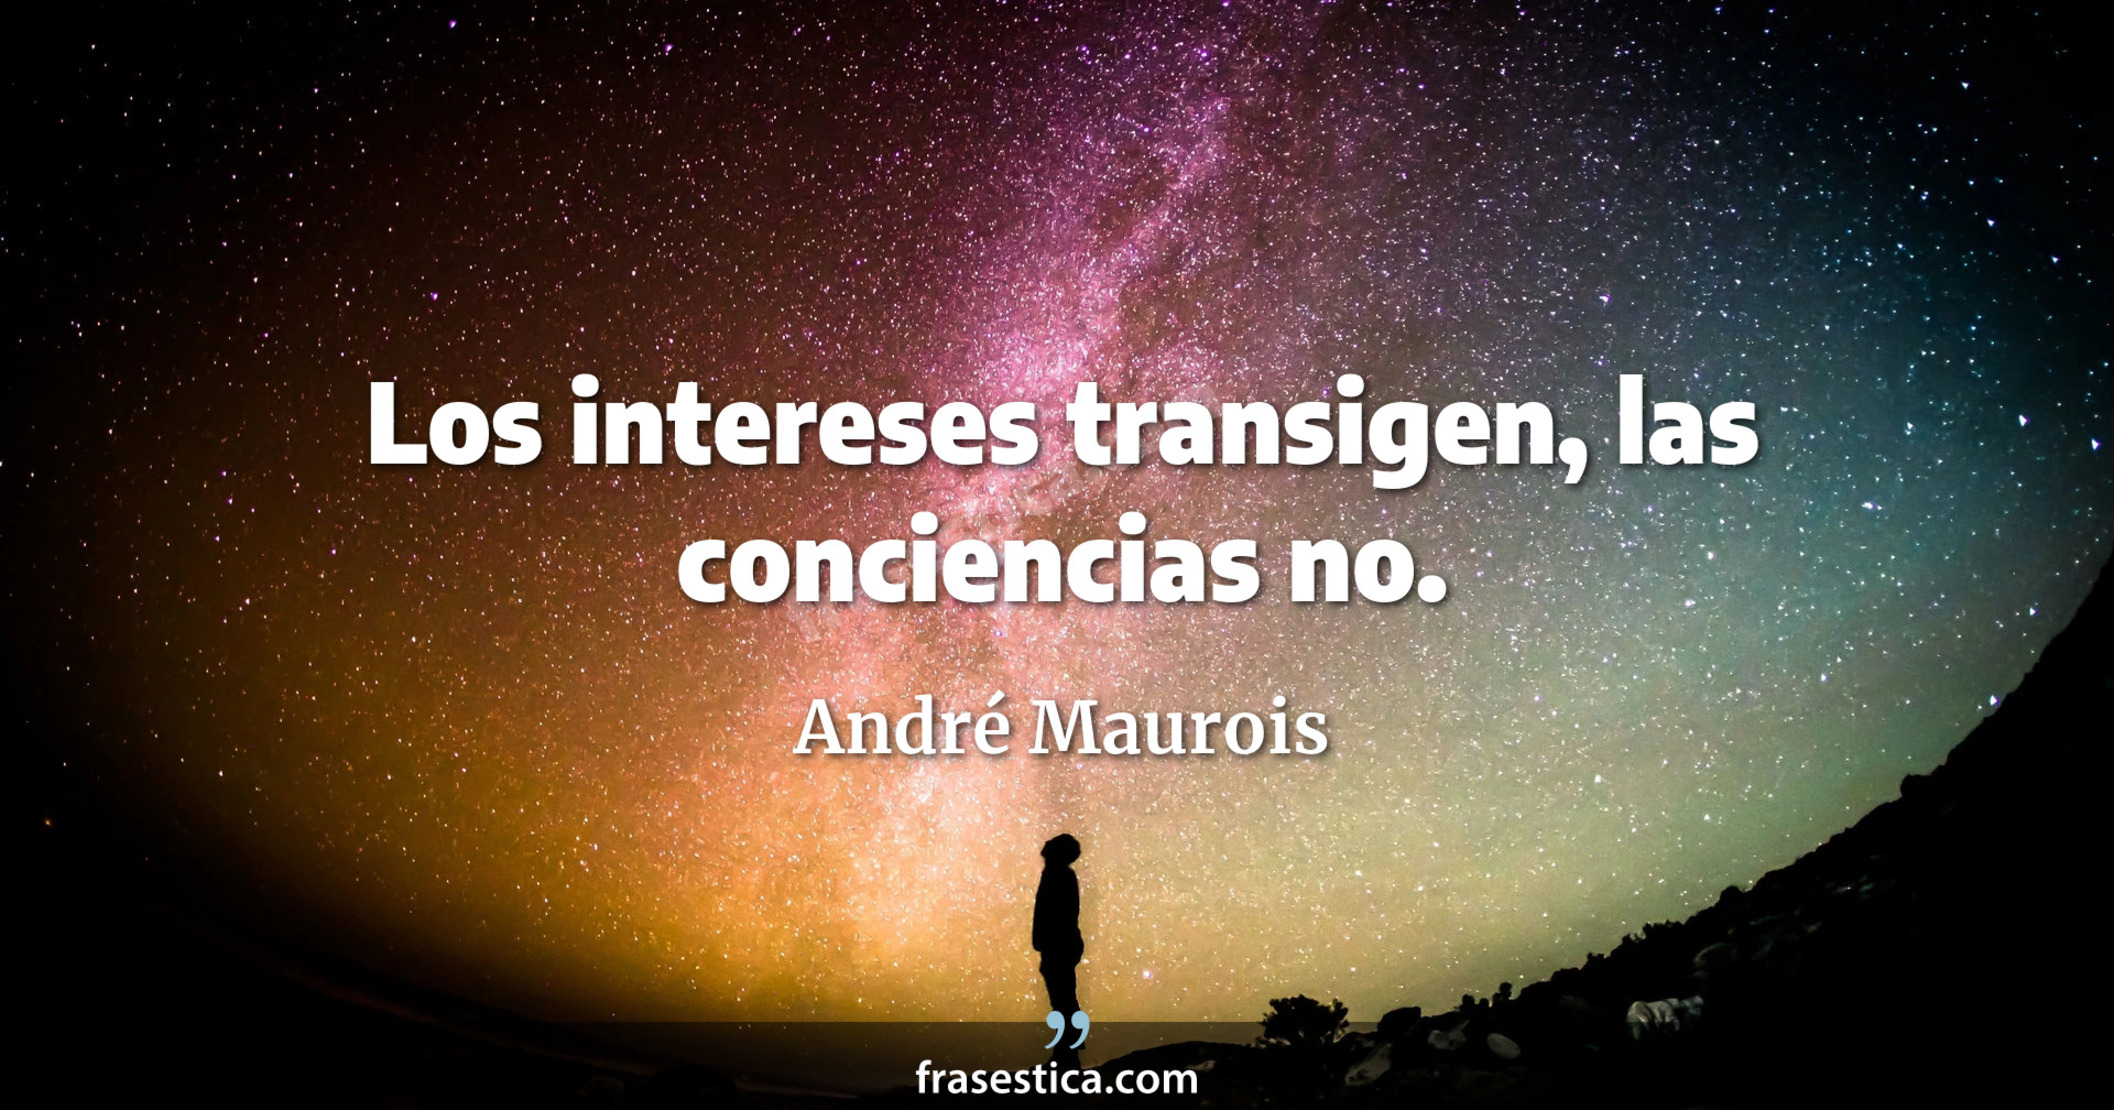 Los intereses transigen, las conciencias no. - André Maurois